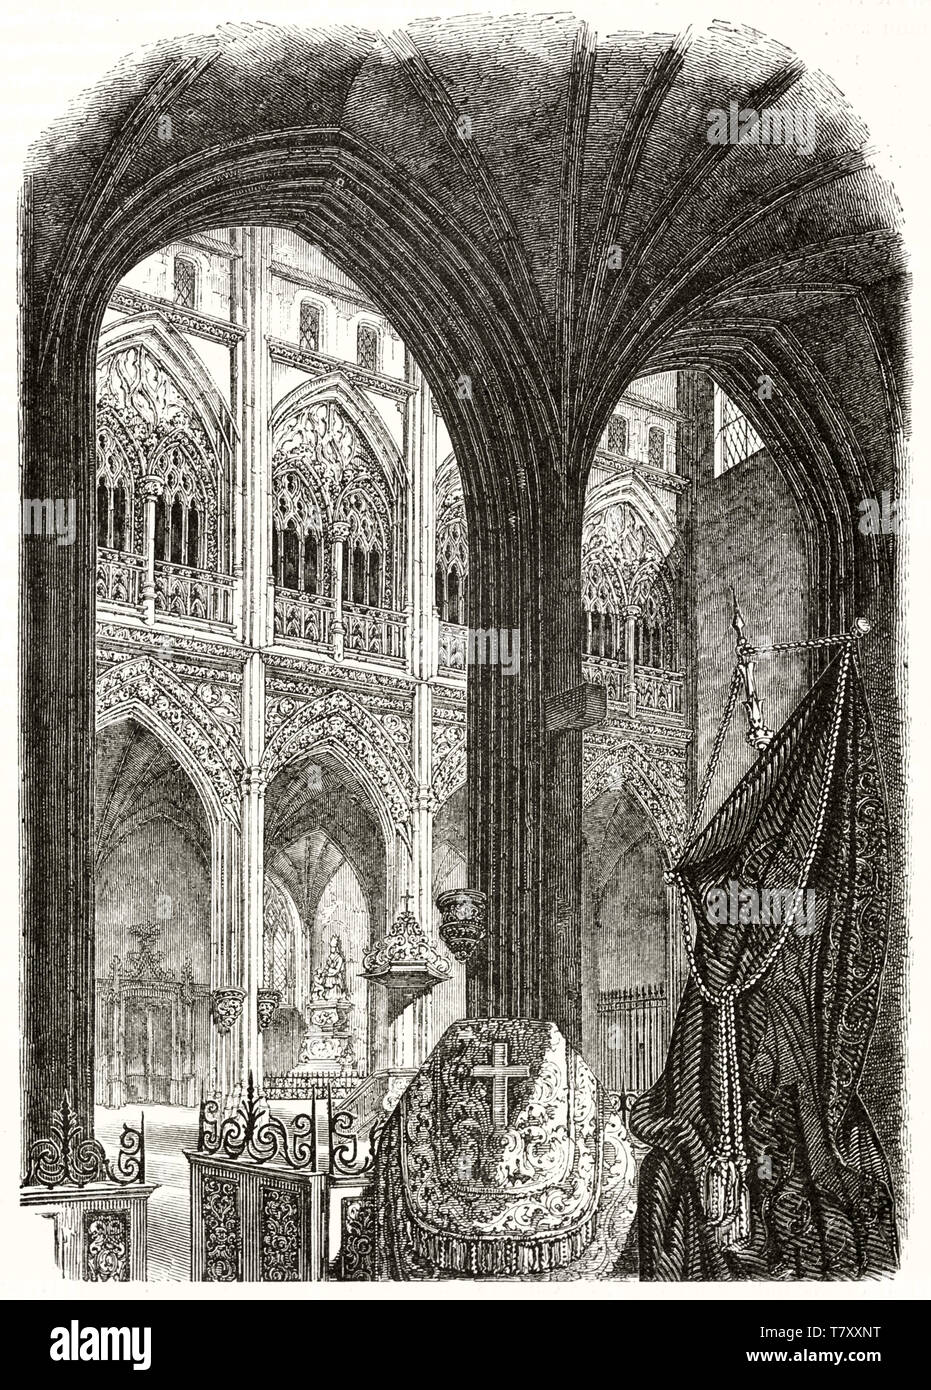 Detail der Ansicht in einem alten gotischen Kirche mit seinem Spitzbögen. Alte Gravur stil Abbildung von Saint-Ouen Innenraum der Kirche Verneuil-sur-Avre Frankreich. Magasin Pittoresque Paris 1848 Stockfoto